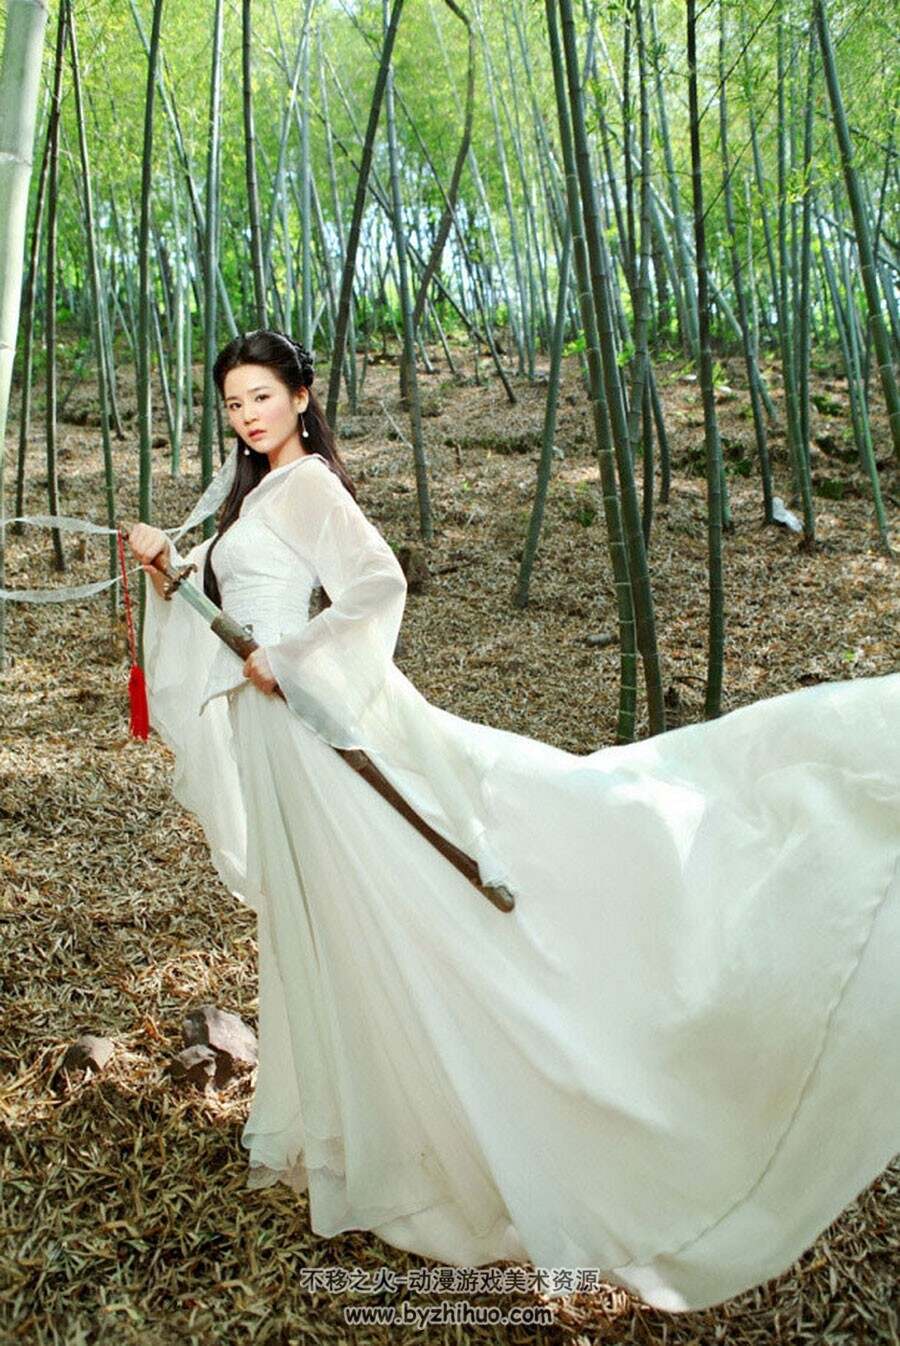 中式古装女模特人体艺用写真摄影素材美术参考 828P